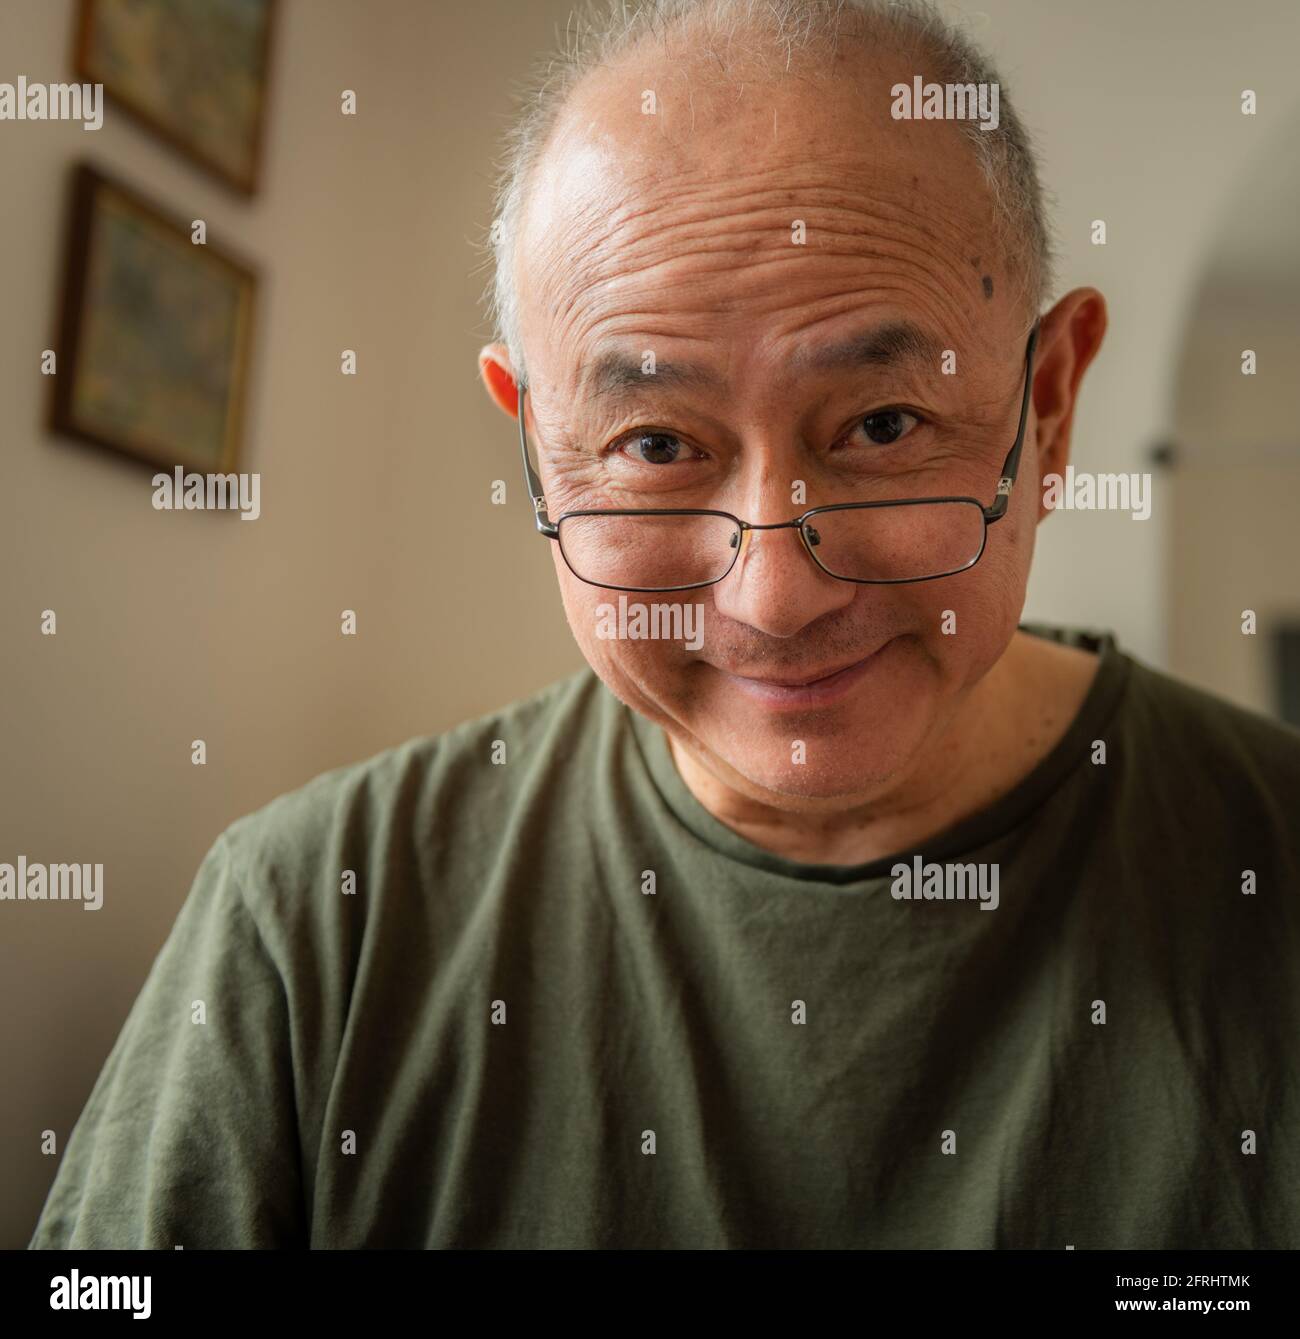 Un hombre asiático de edad avanzada, amable y feliz en casa con una expresión facial sonriente. Foto de stock